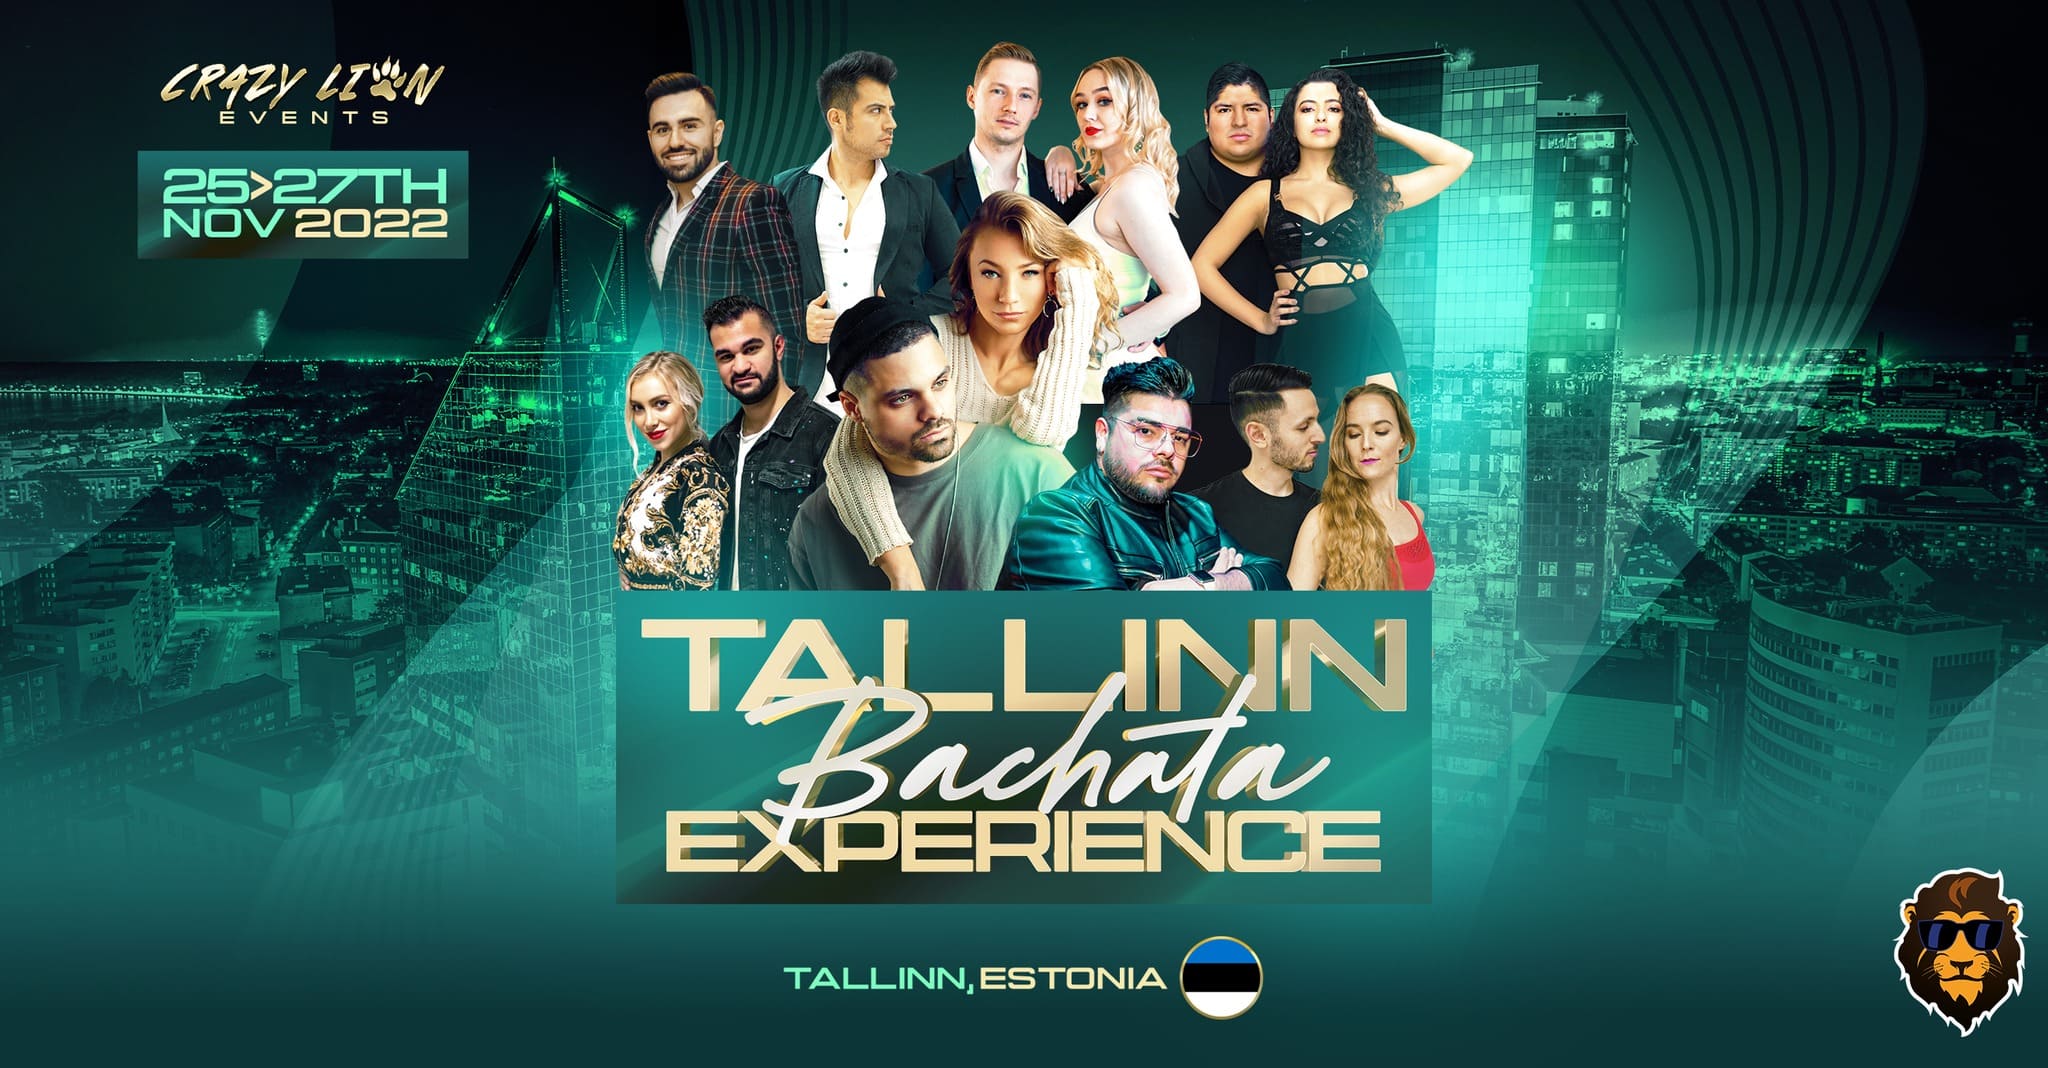 Tallinn Bachata Experience | 25-27th Nov 2022